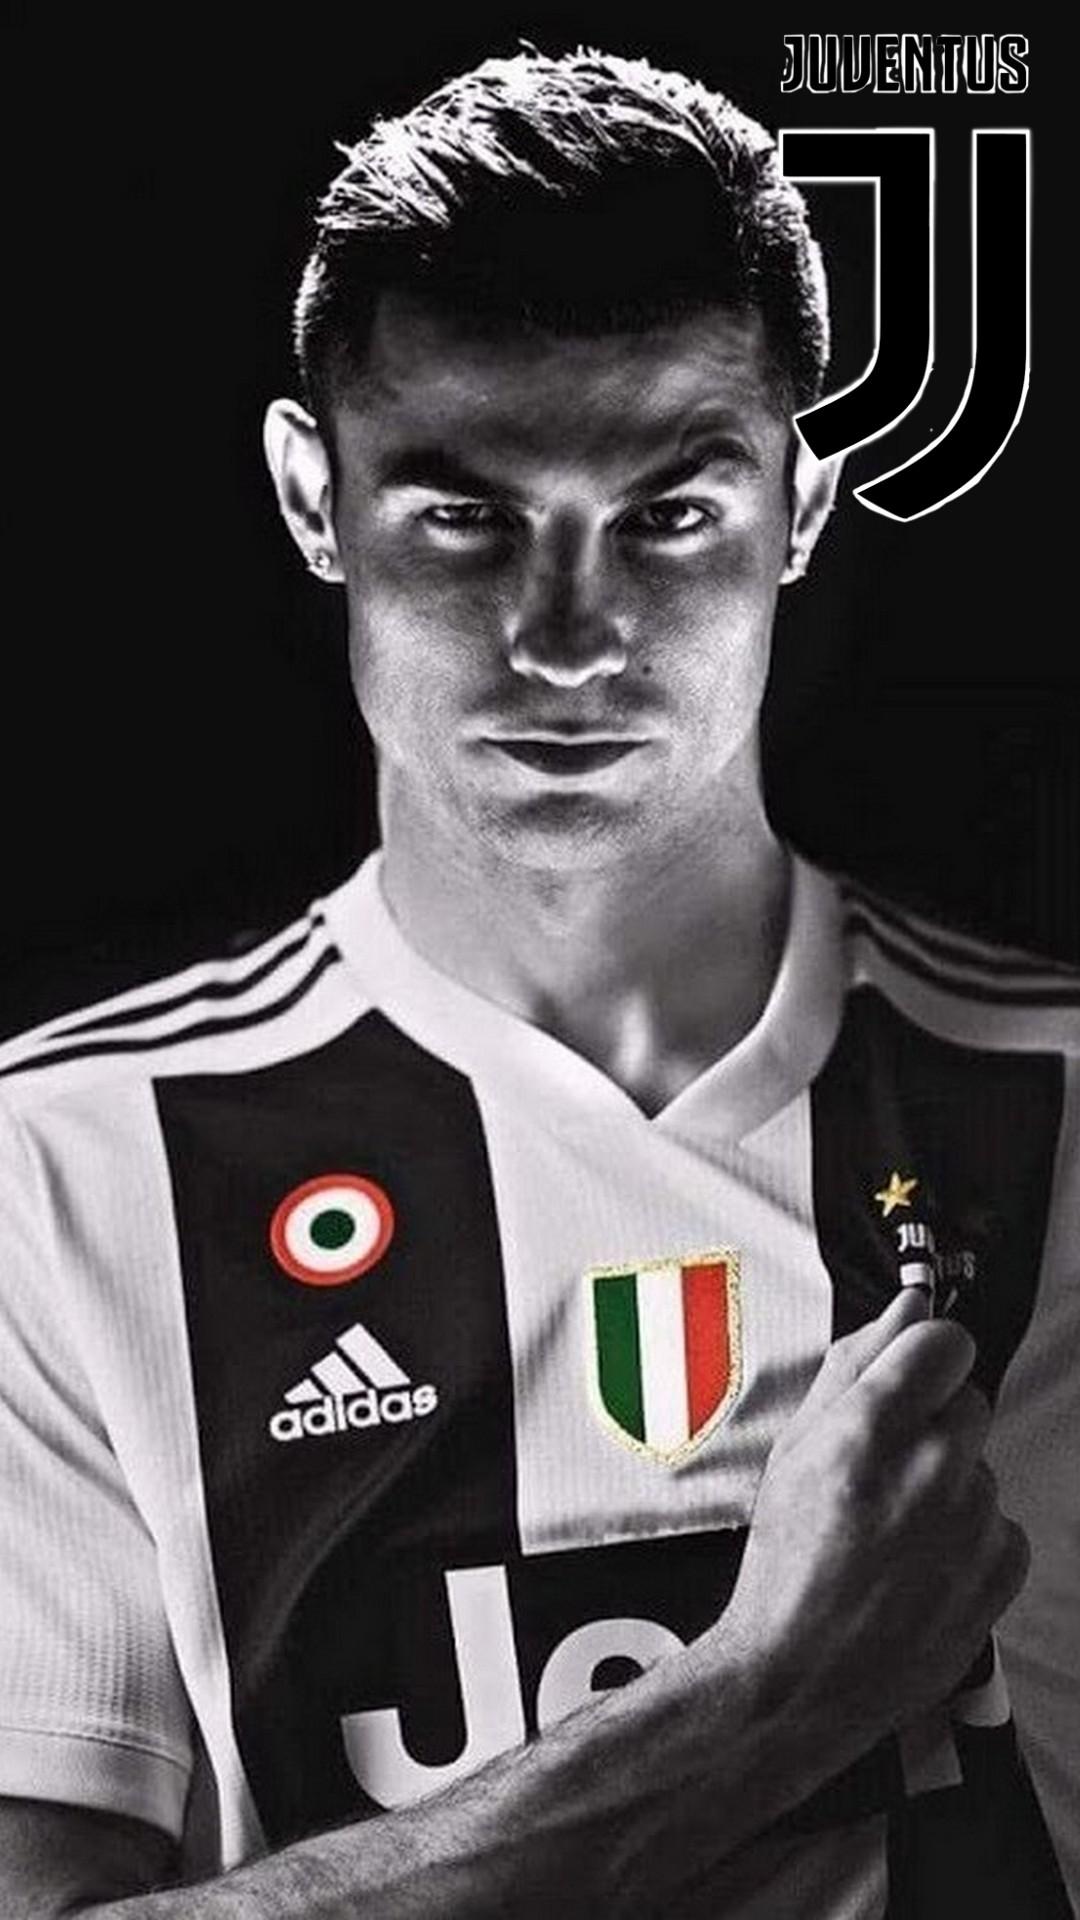 Cristiano Ronaldo Wallpaper Download New HD Image Of CR7